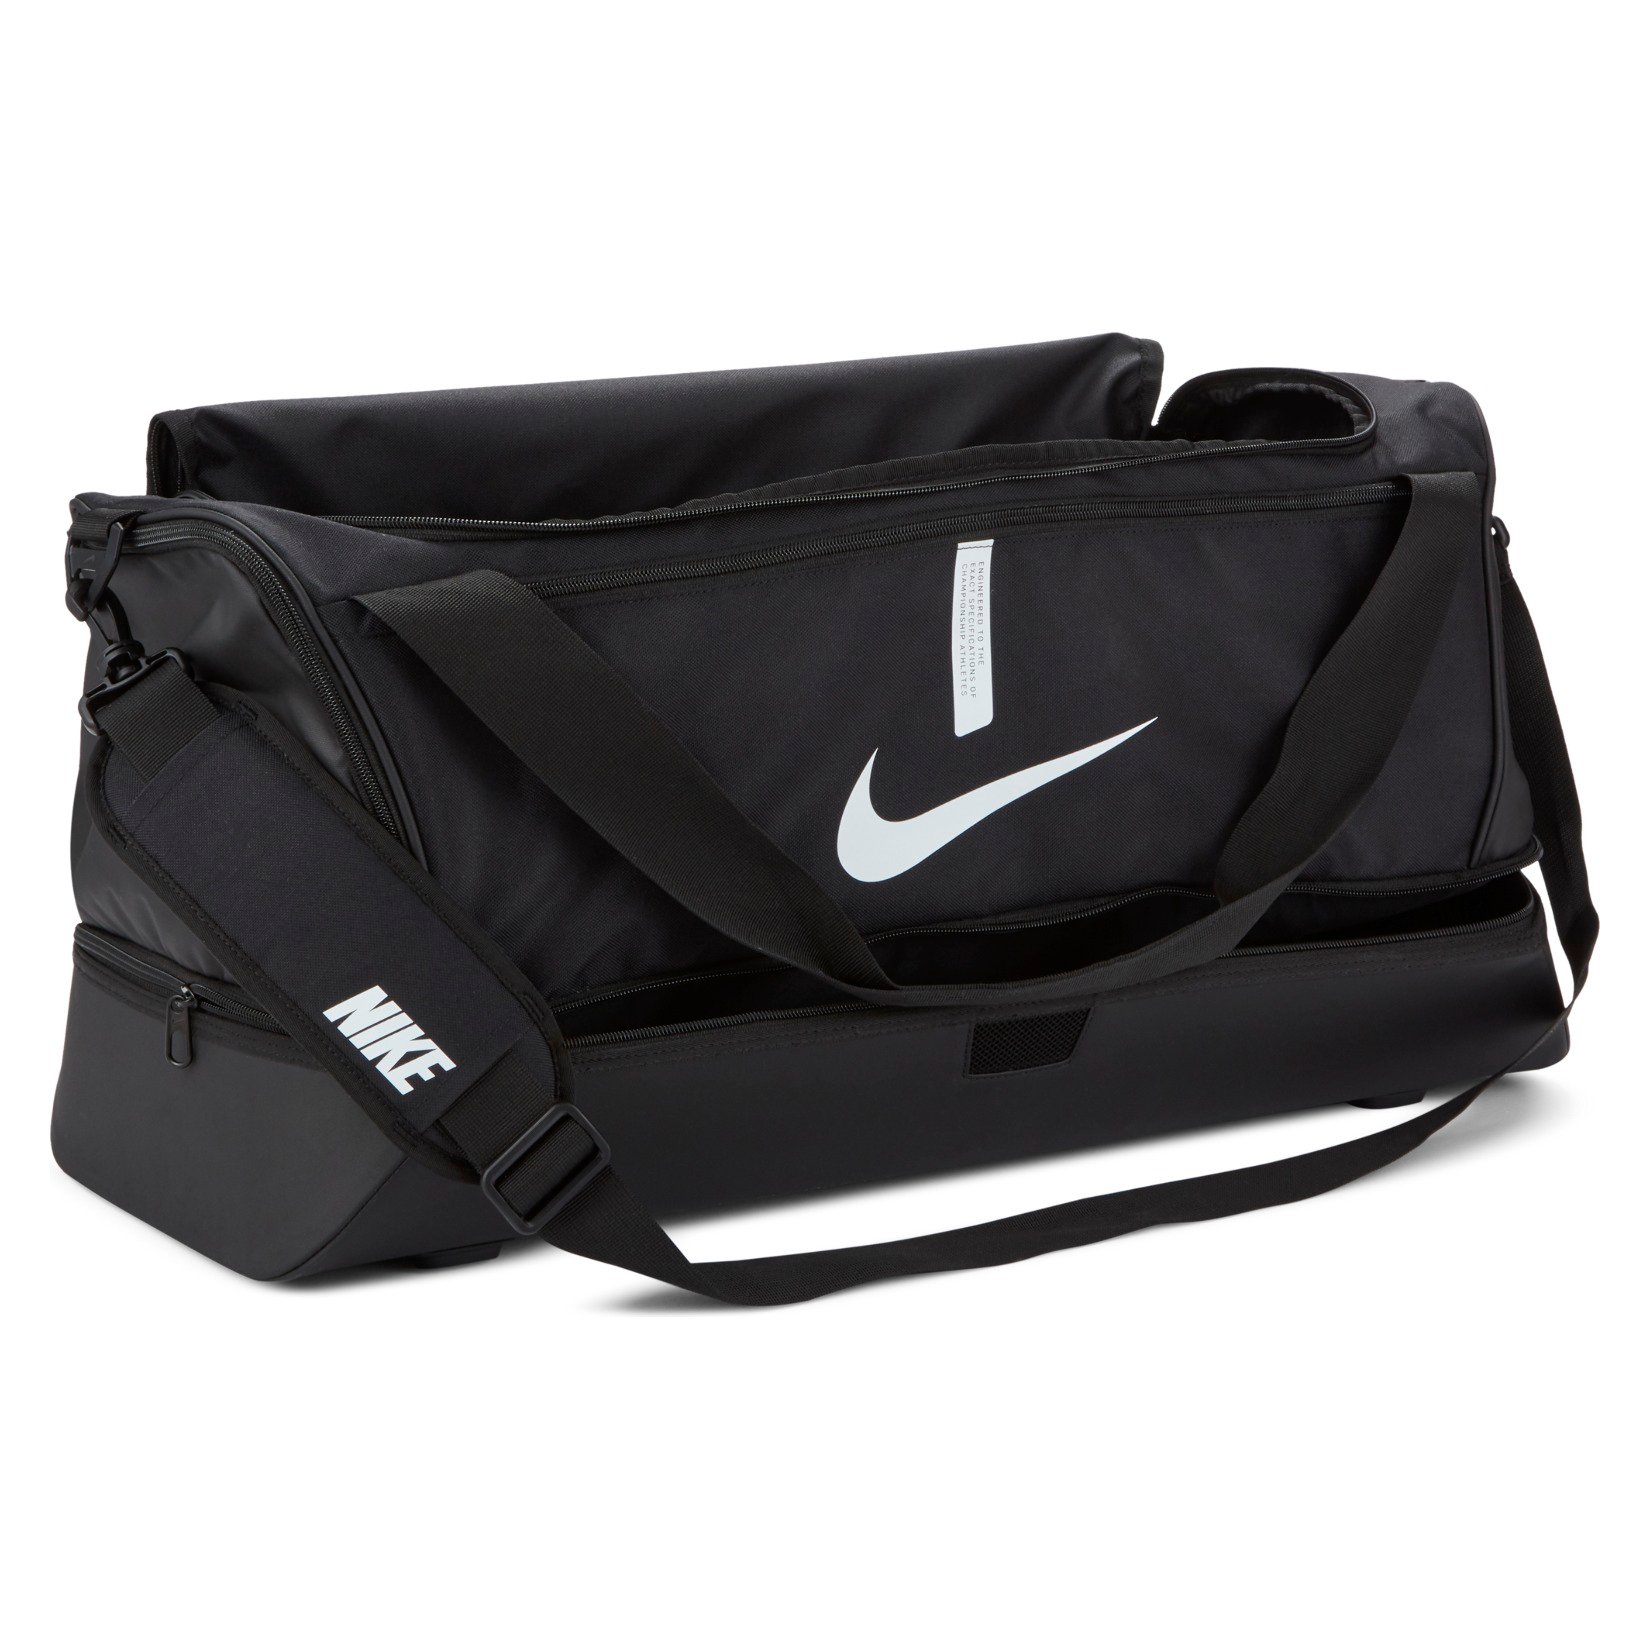 Nike Weightlifting Bag | lupon.gov.ph